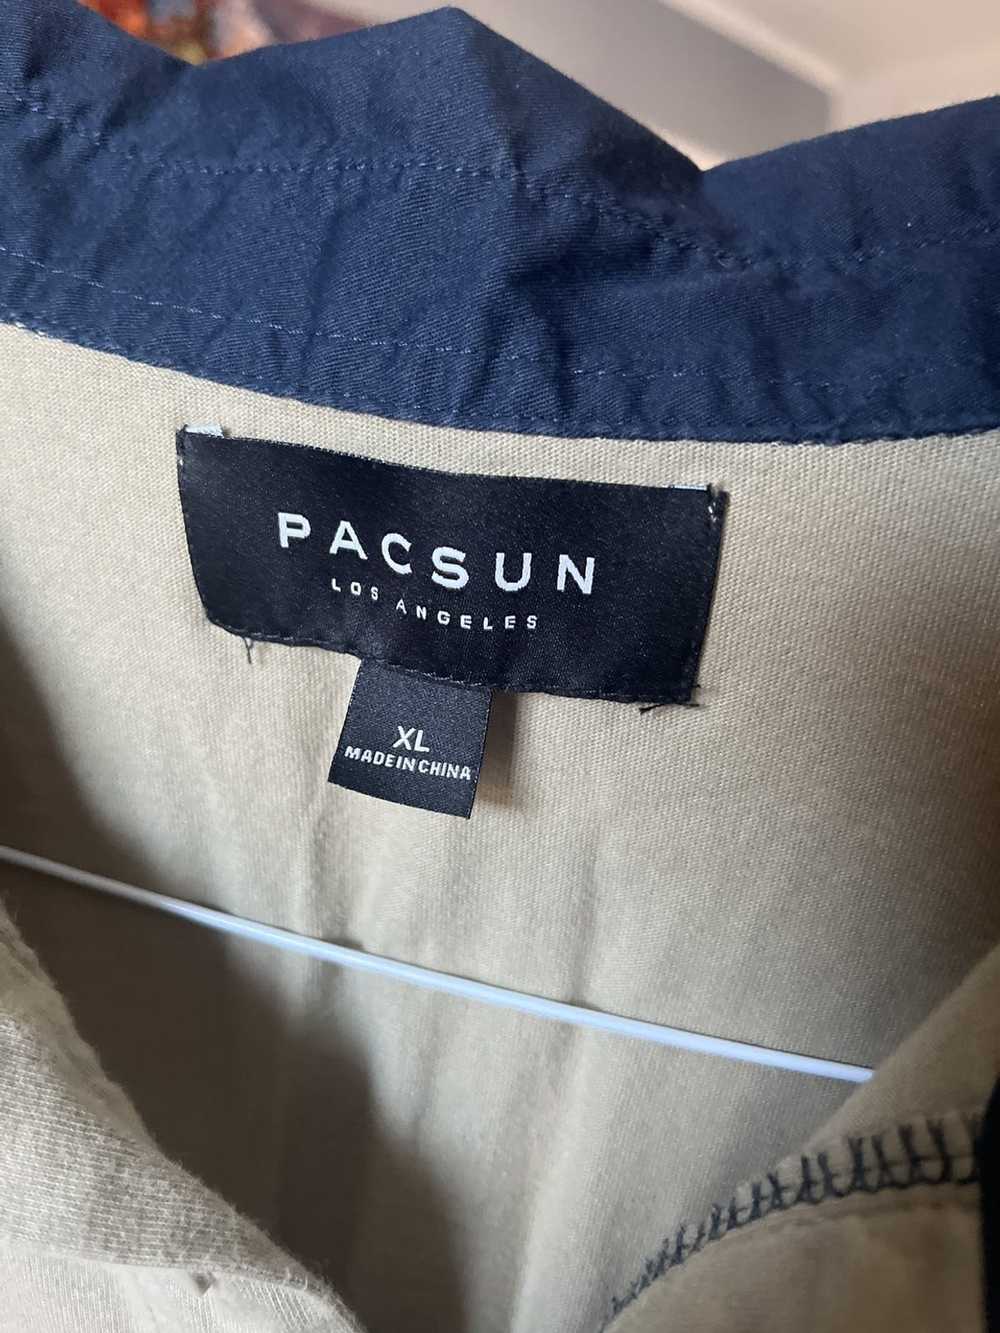 Pacsun Pacsun Long Sleeve Tri-Color - image 2